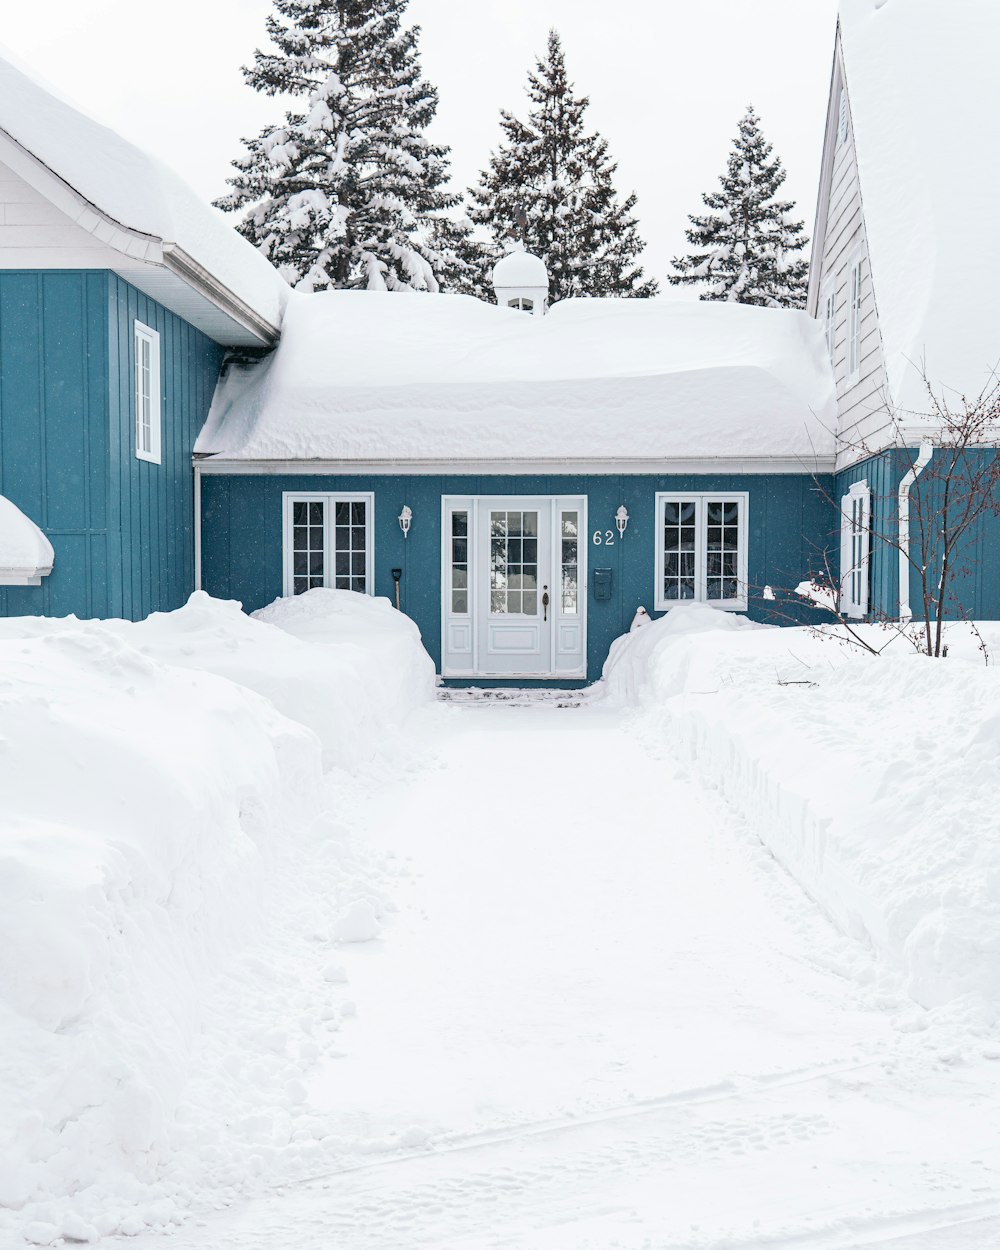 Weißes Holzhaus auf schneebedecktem Boden